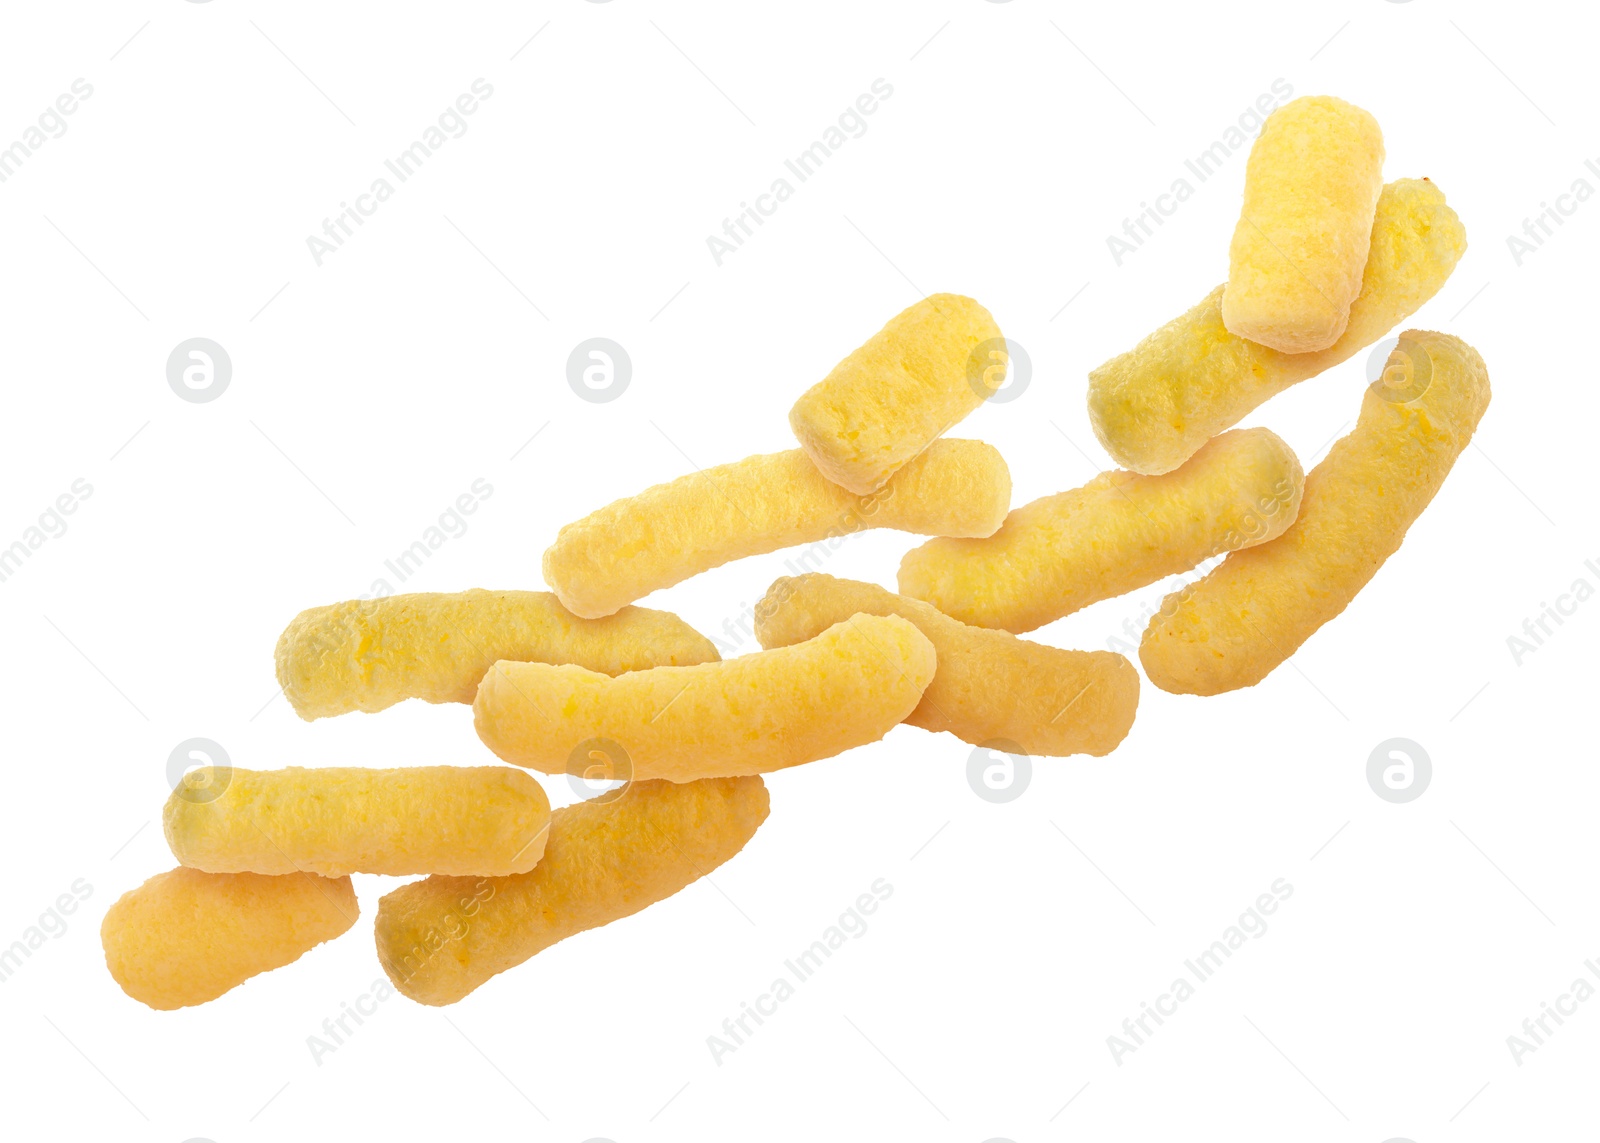 Image of Many tasty corn sticks falling on white background